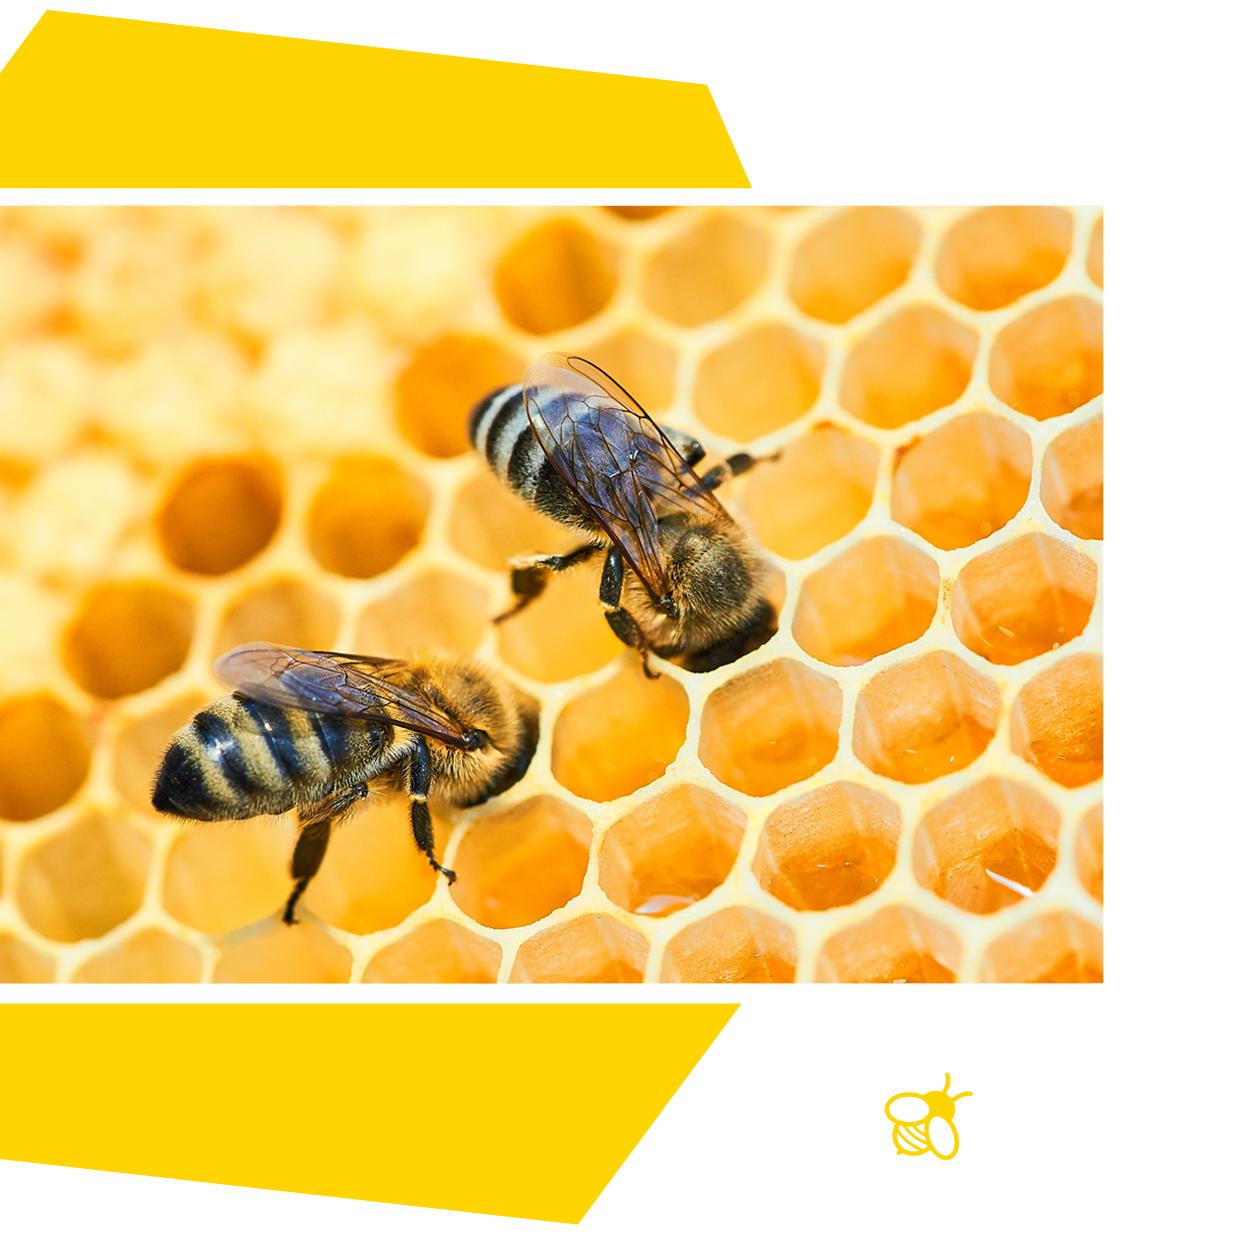 Δύο μέλισσες πάνω σε μία κηρήθρα